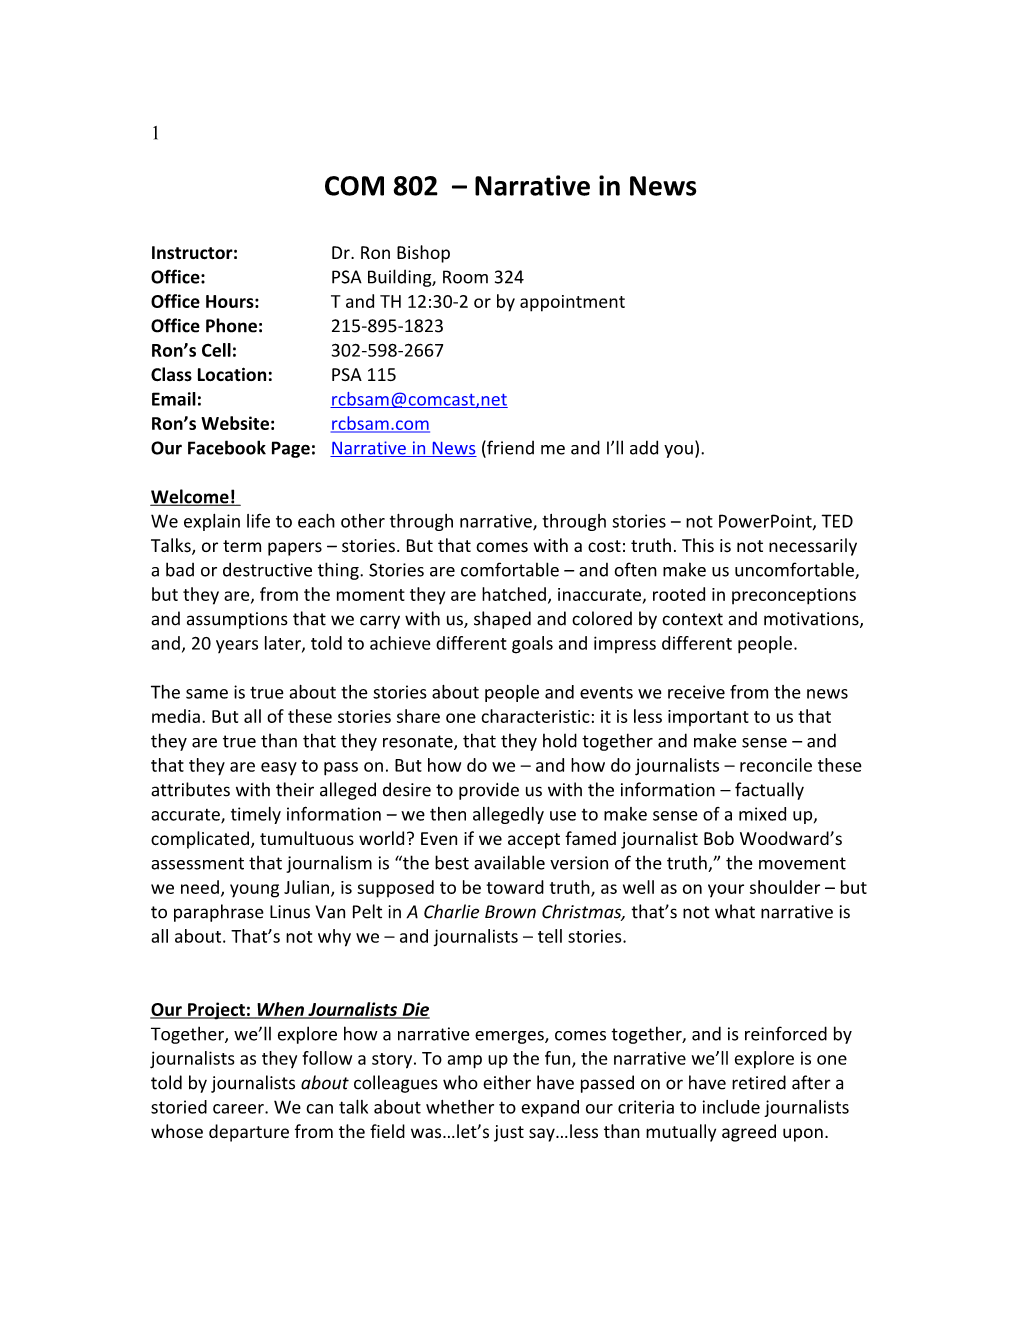 COM 802 Narrative in News